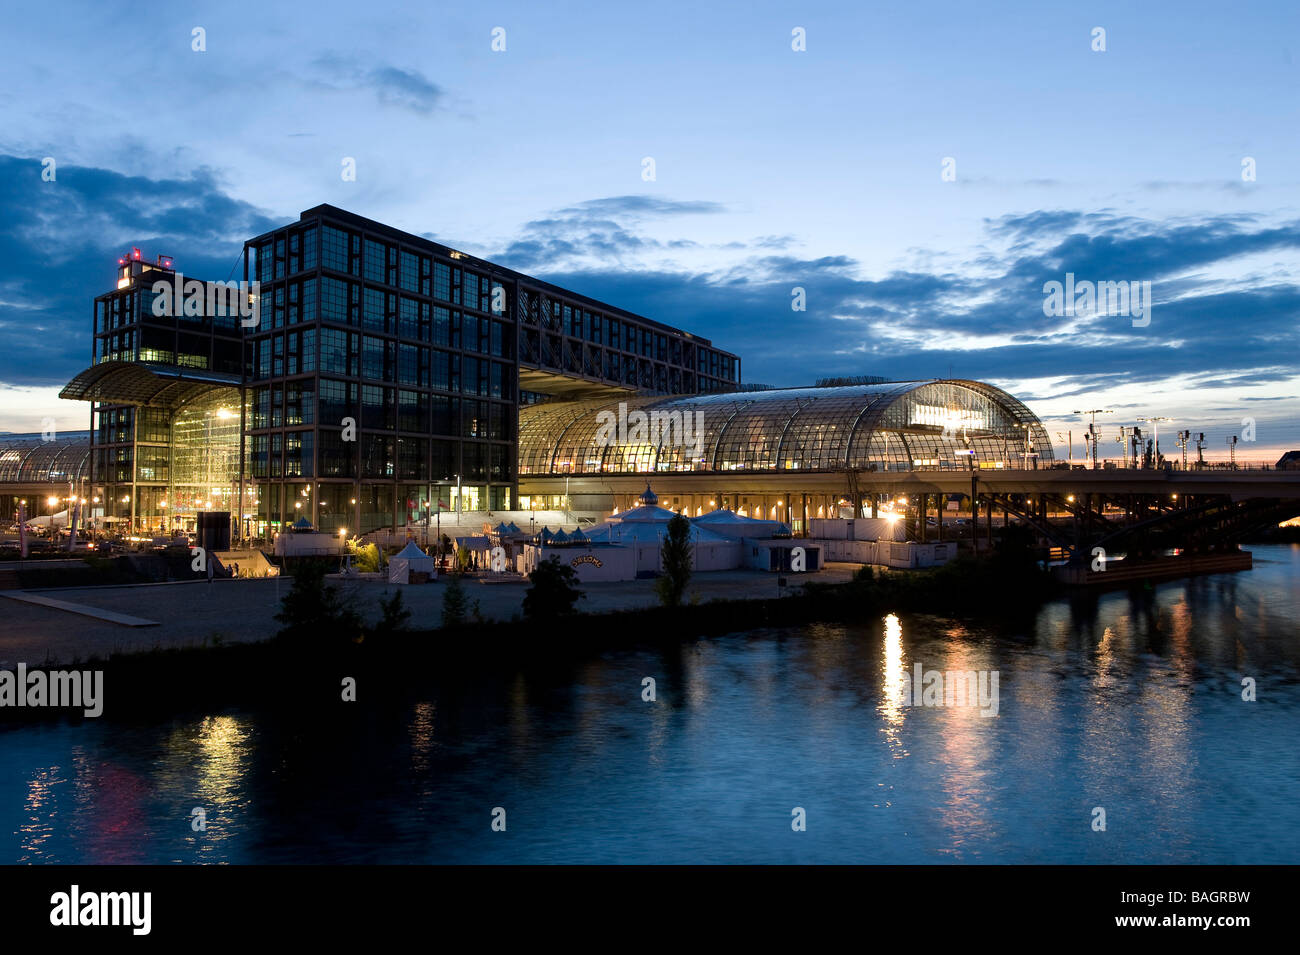 Germany, Berlin, the new Berlin, Hauptbahnhof (Berliner Hauptbahnhof) Stock Photo